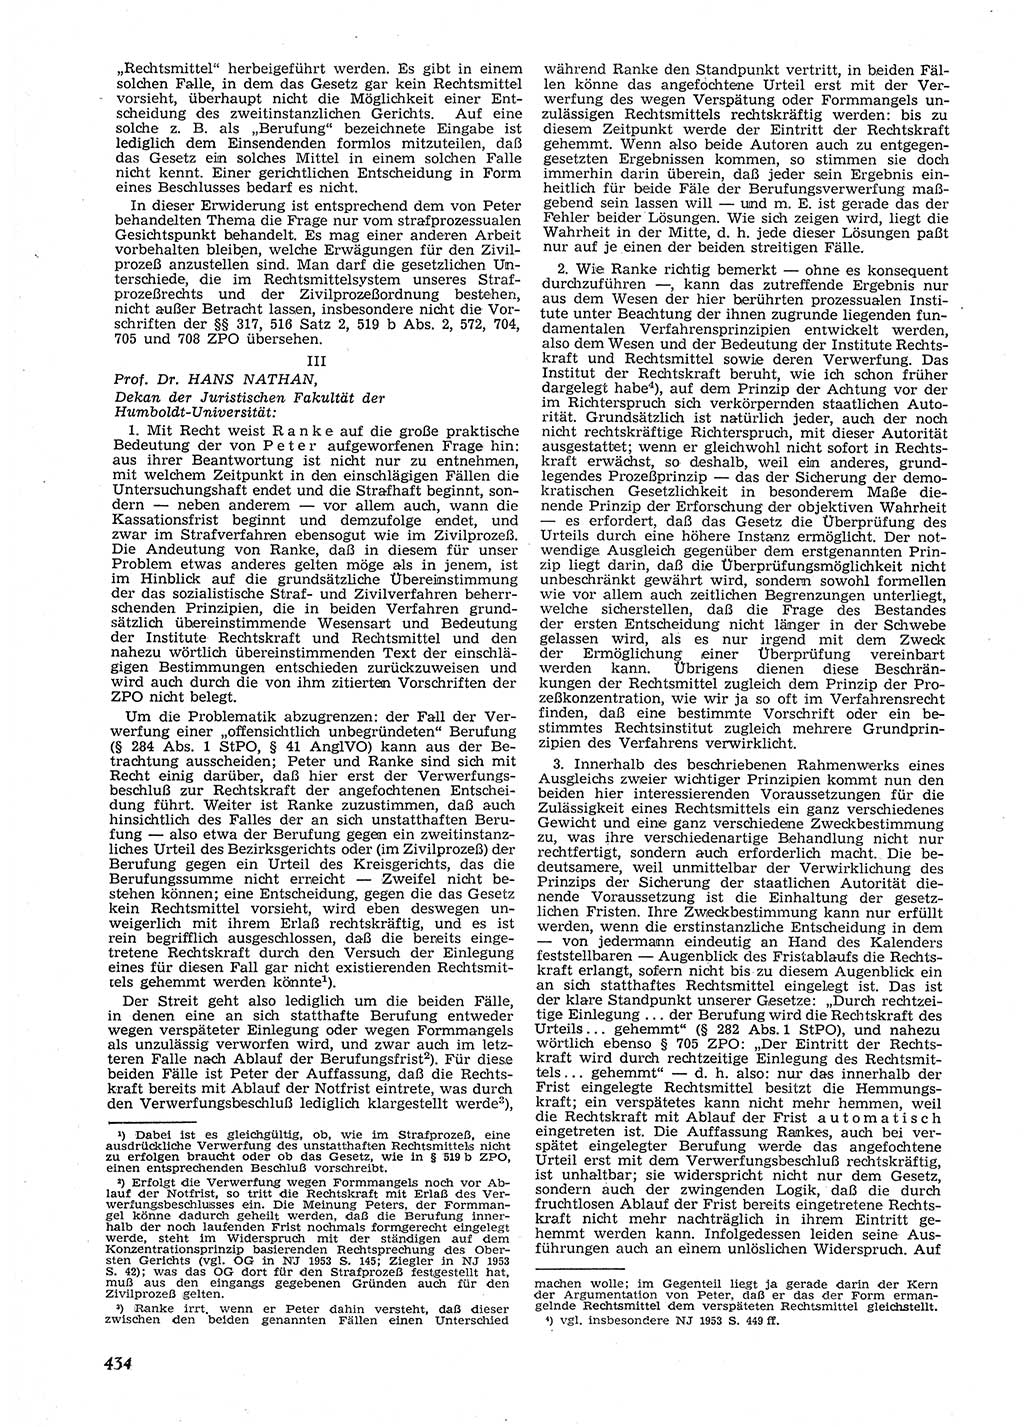 Neue Justiz (NJ), Zeitschrift für Recht und Rechtswissenschaft [Deutsche Demokratische Republik (DDR)], 9. Jahrgang 1955, Seite 434 (NJ DDR 1955, S. 434)